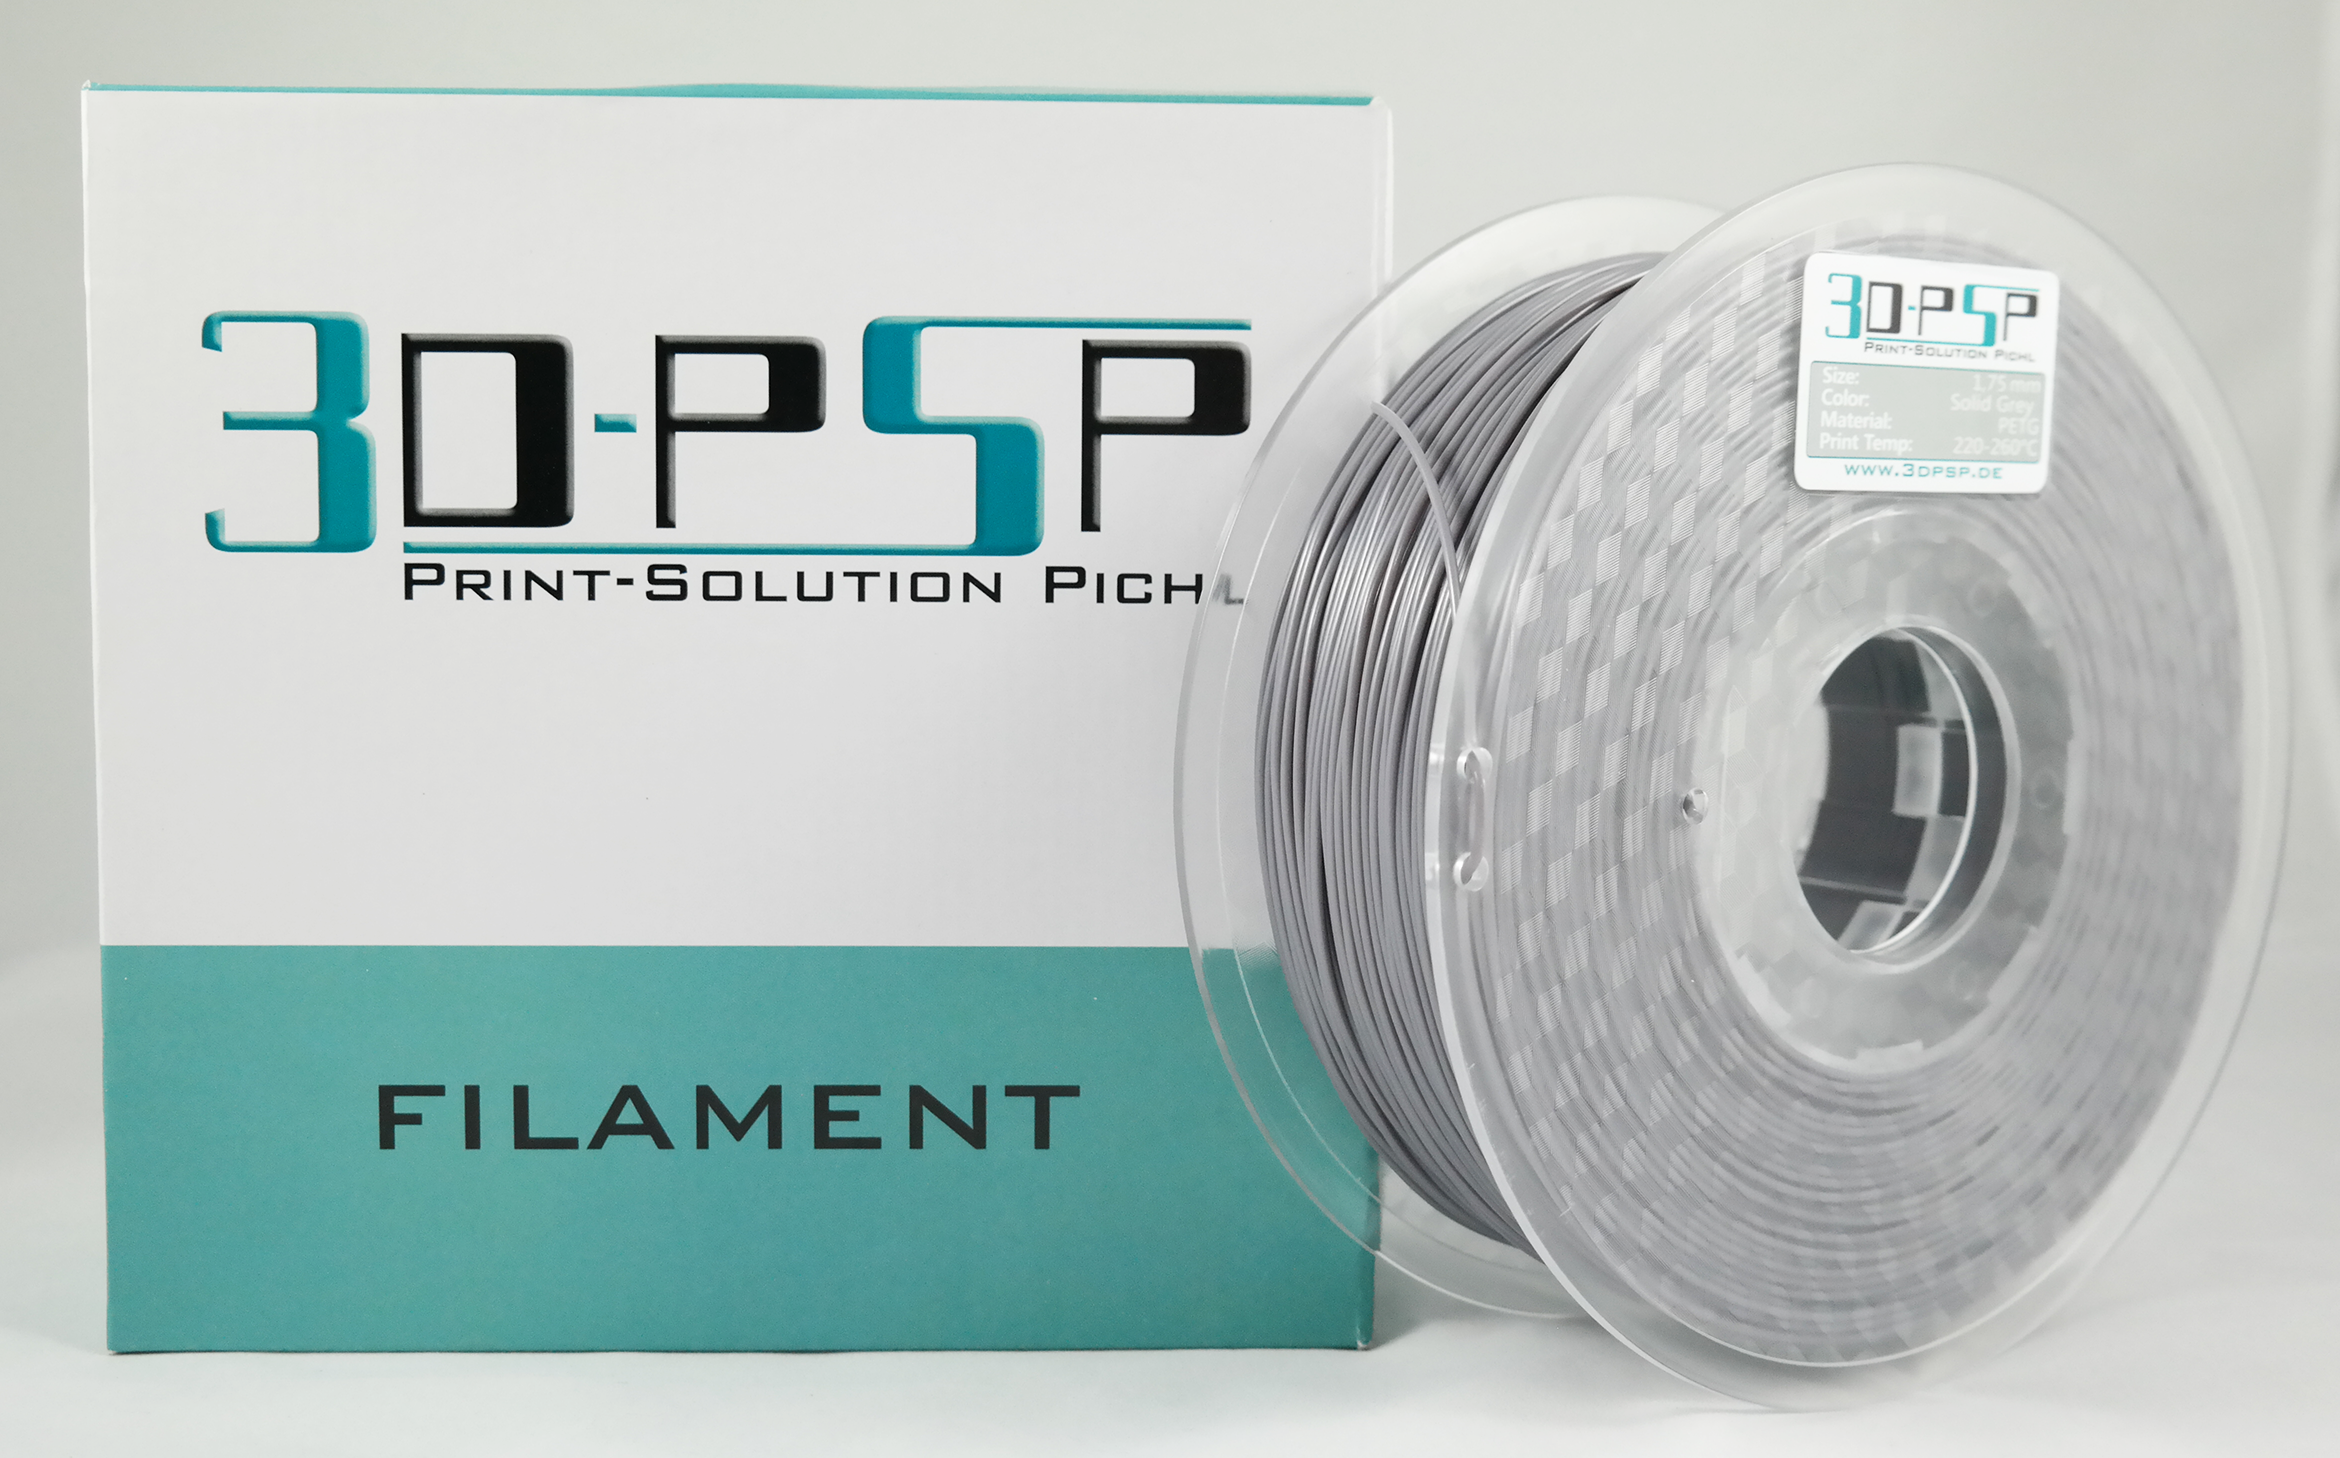 3DPSP PETG Filament  - Solid Grey - 1.75mm - 1Kg